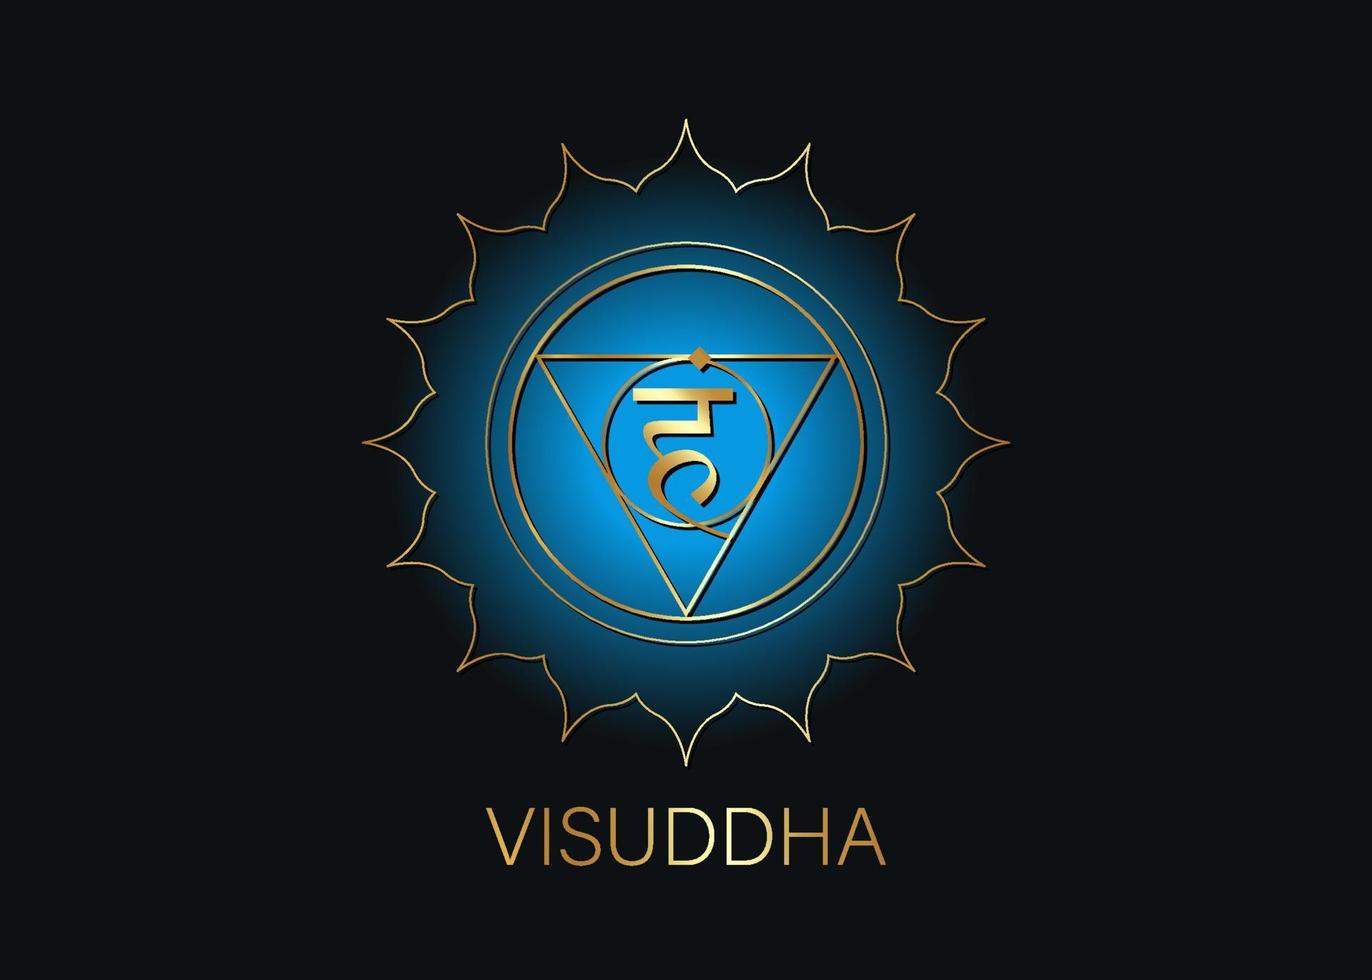 femte halschakrat visuddha med det hinduiska sanskritfröet mantra vam. blå och guld platt design stil symbol för meditation, yoga. rund logotyp mall vektor isolerad på svart bakgrund